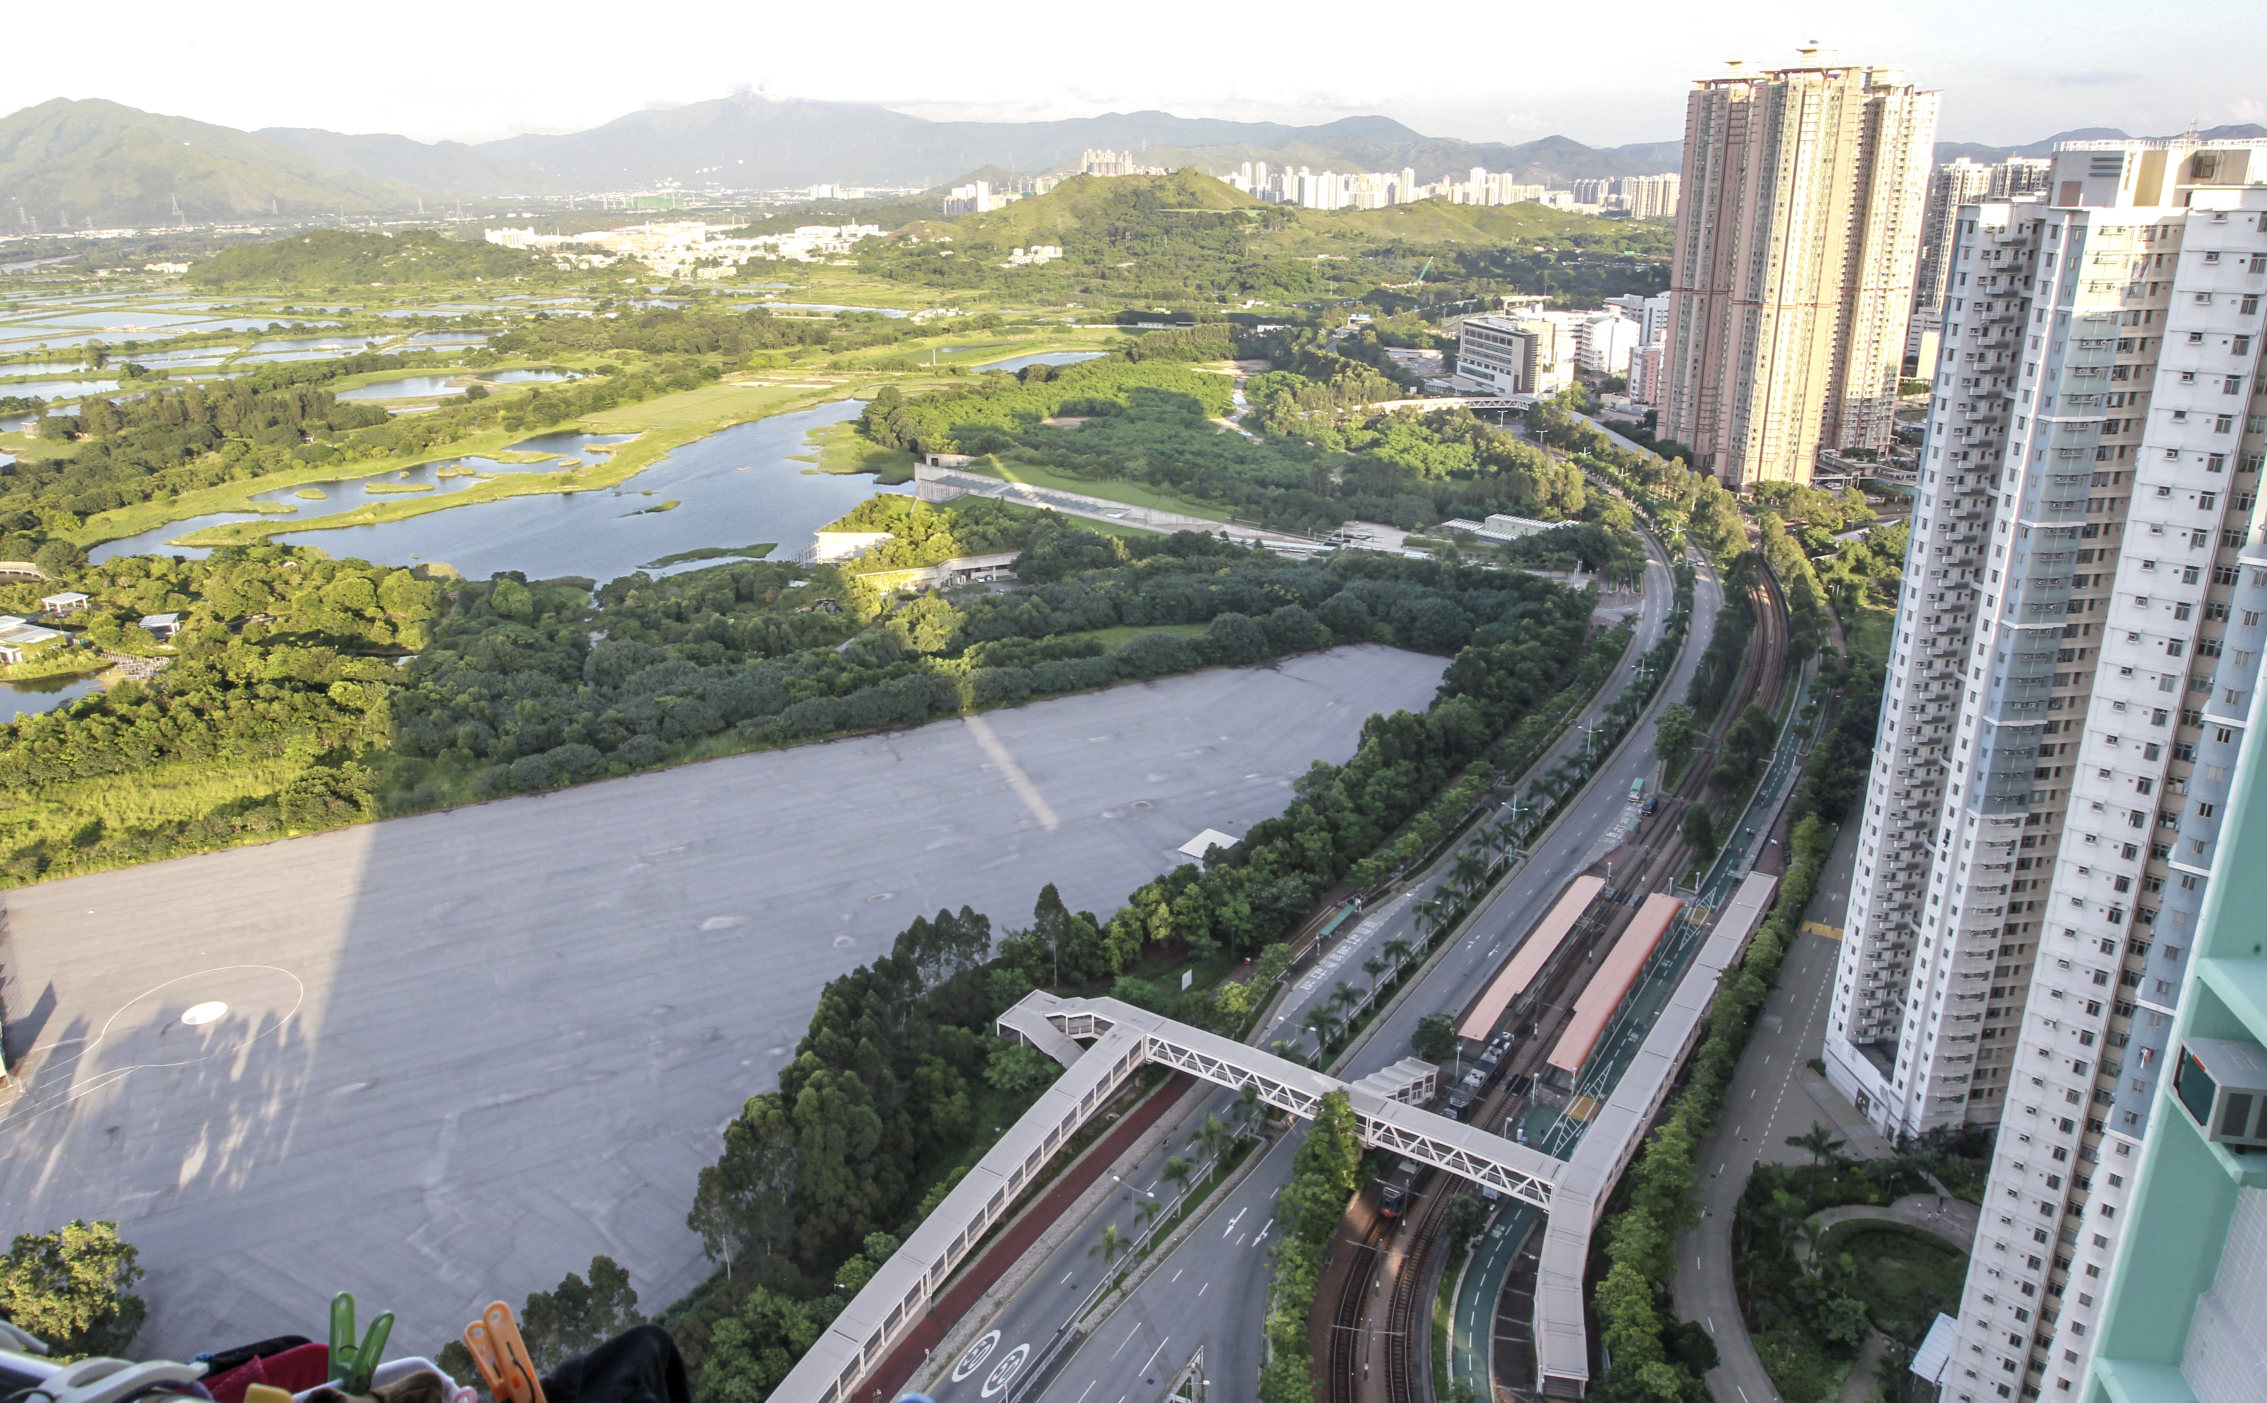 The development at Tin Shui Wai will have views of the Hong Kong Wetland Park. Photo: Edward Wong